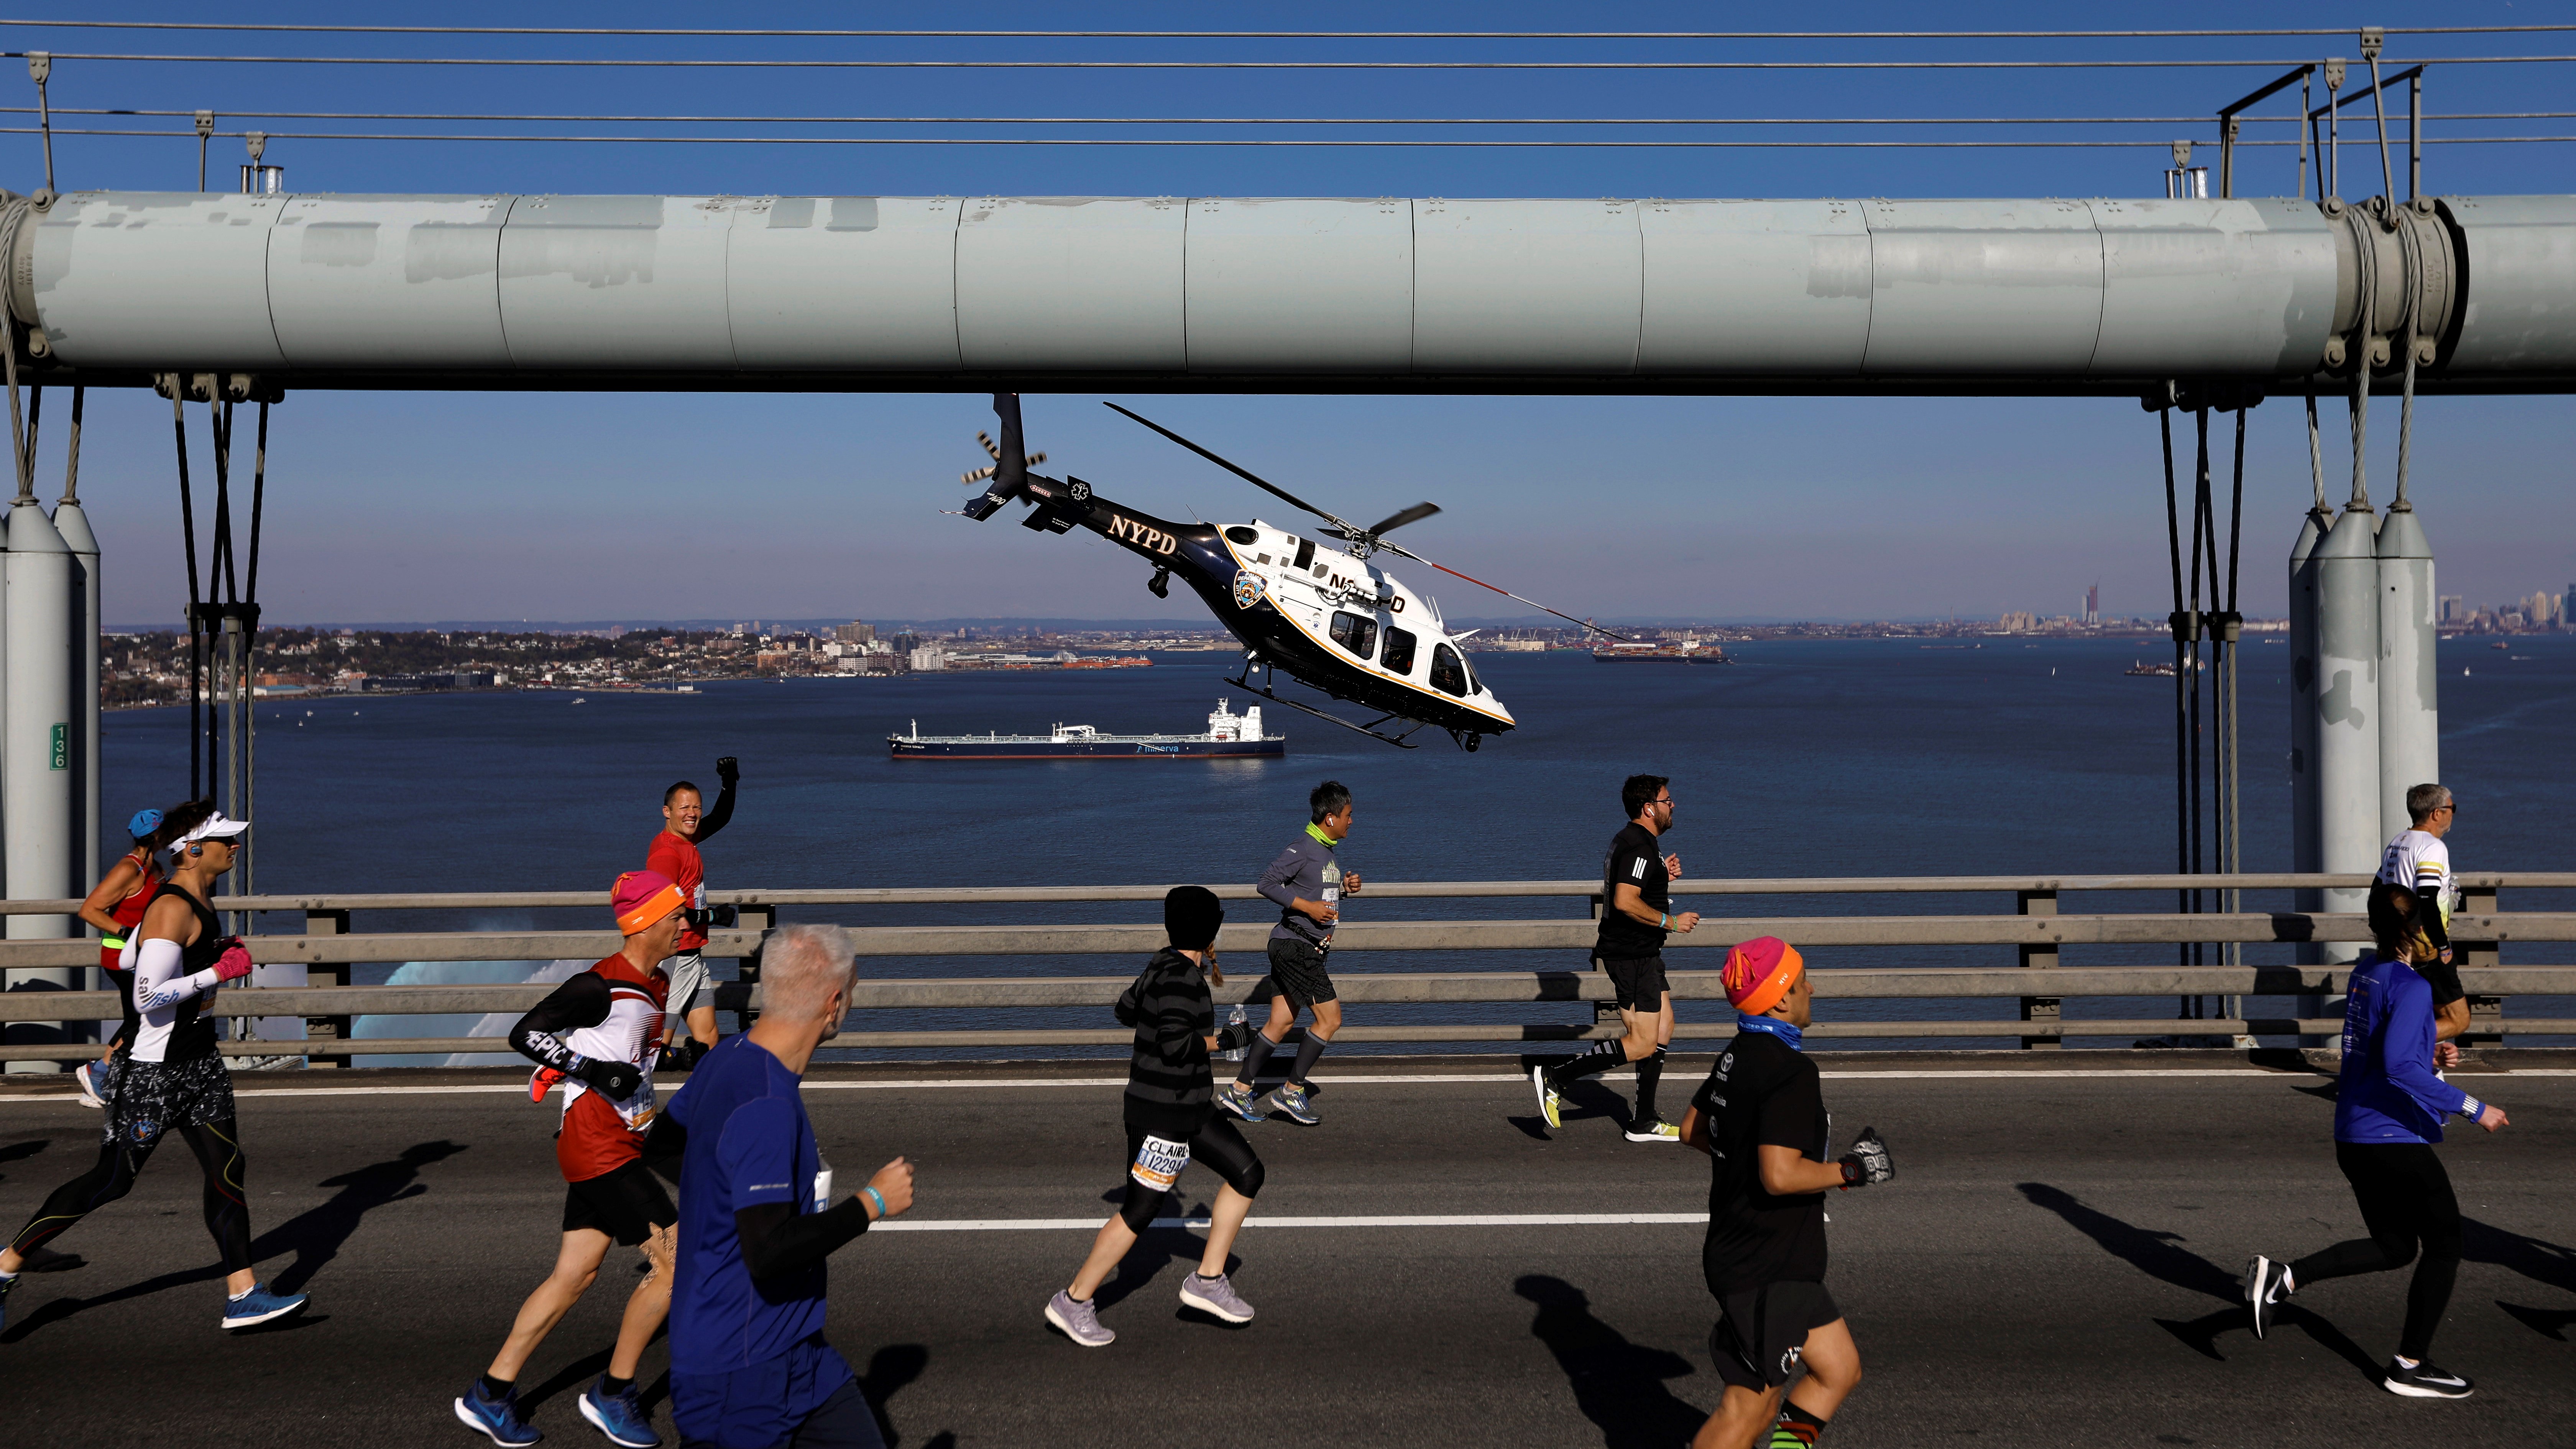 Rendőrségi helikopter kíséri a New York-i maratoni futóverseny mezőnyét a Verrazano-Narrows híd mellett.MTI/EPA/Peter Foley